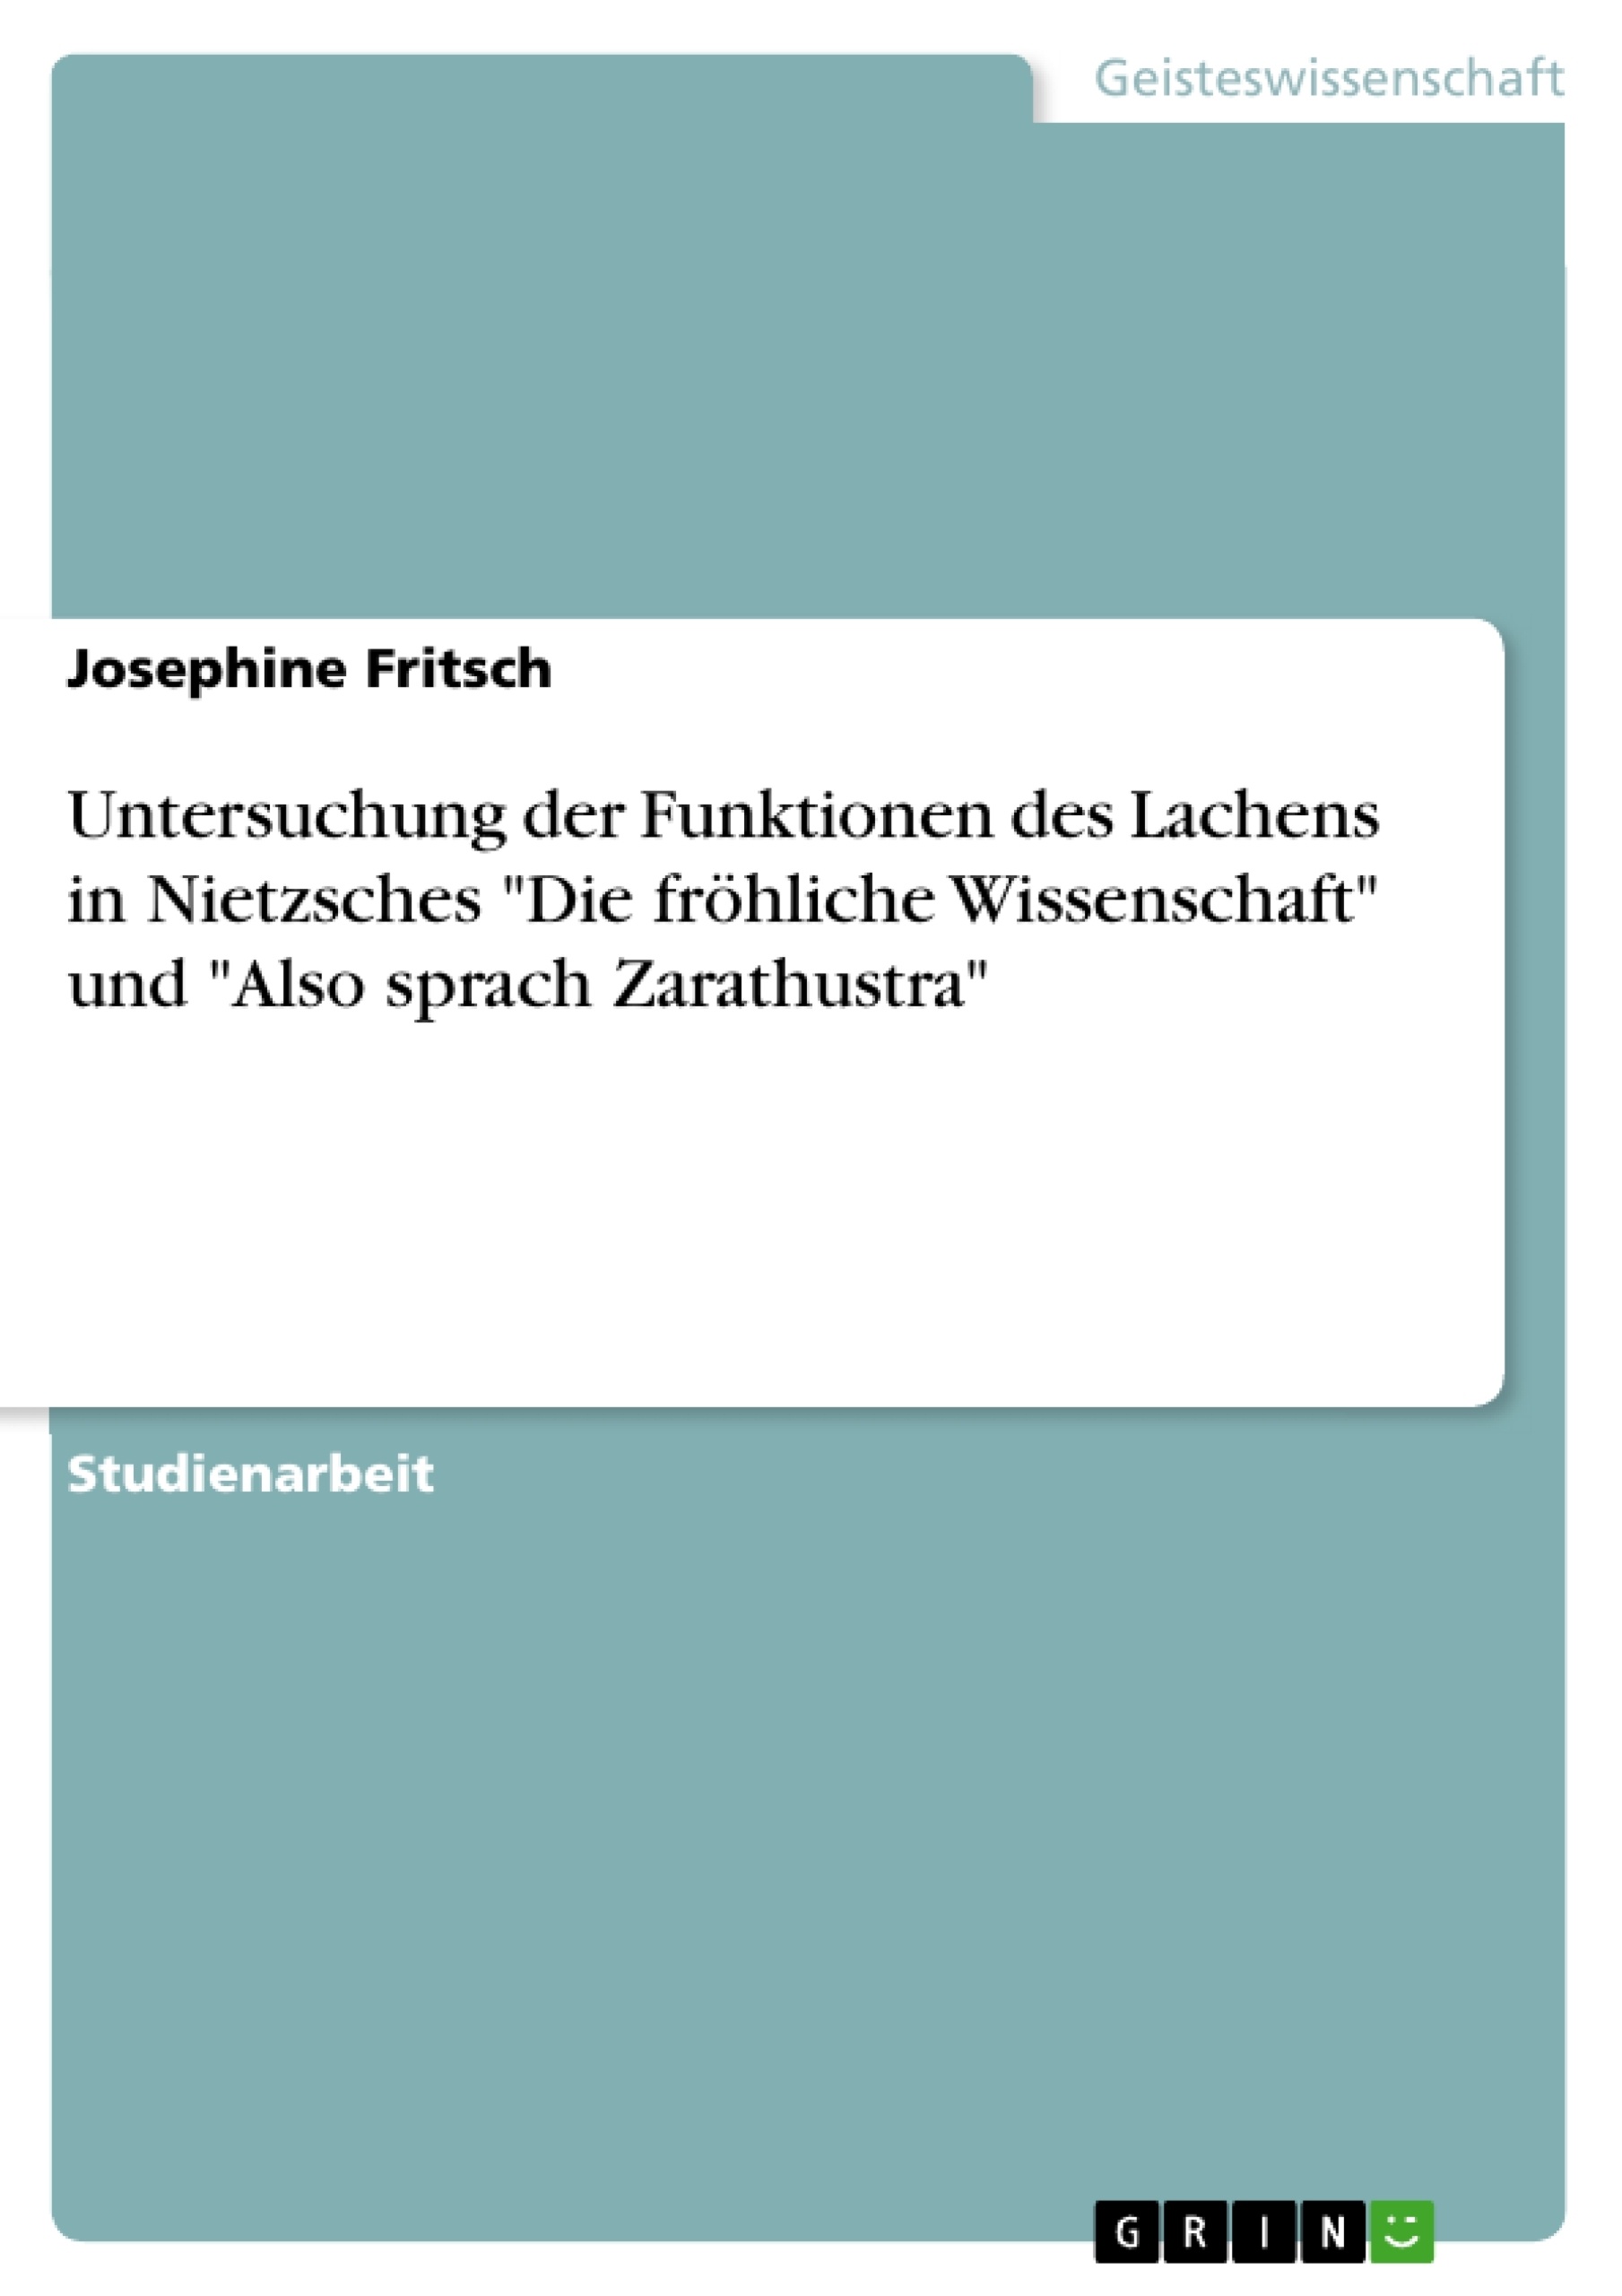 Titre: Untersuchung der Funktionen des Lachens in Nietzsches "Die fröhliche Wissenschaft" und "Also sprach Zarathustra"